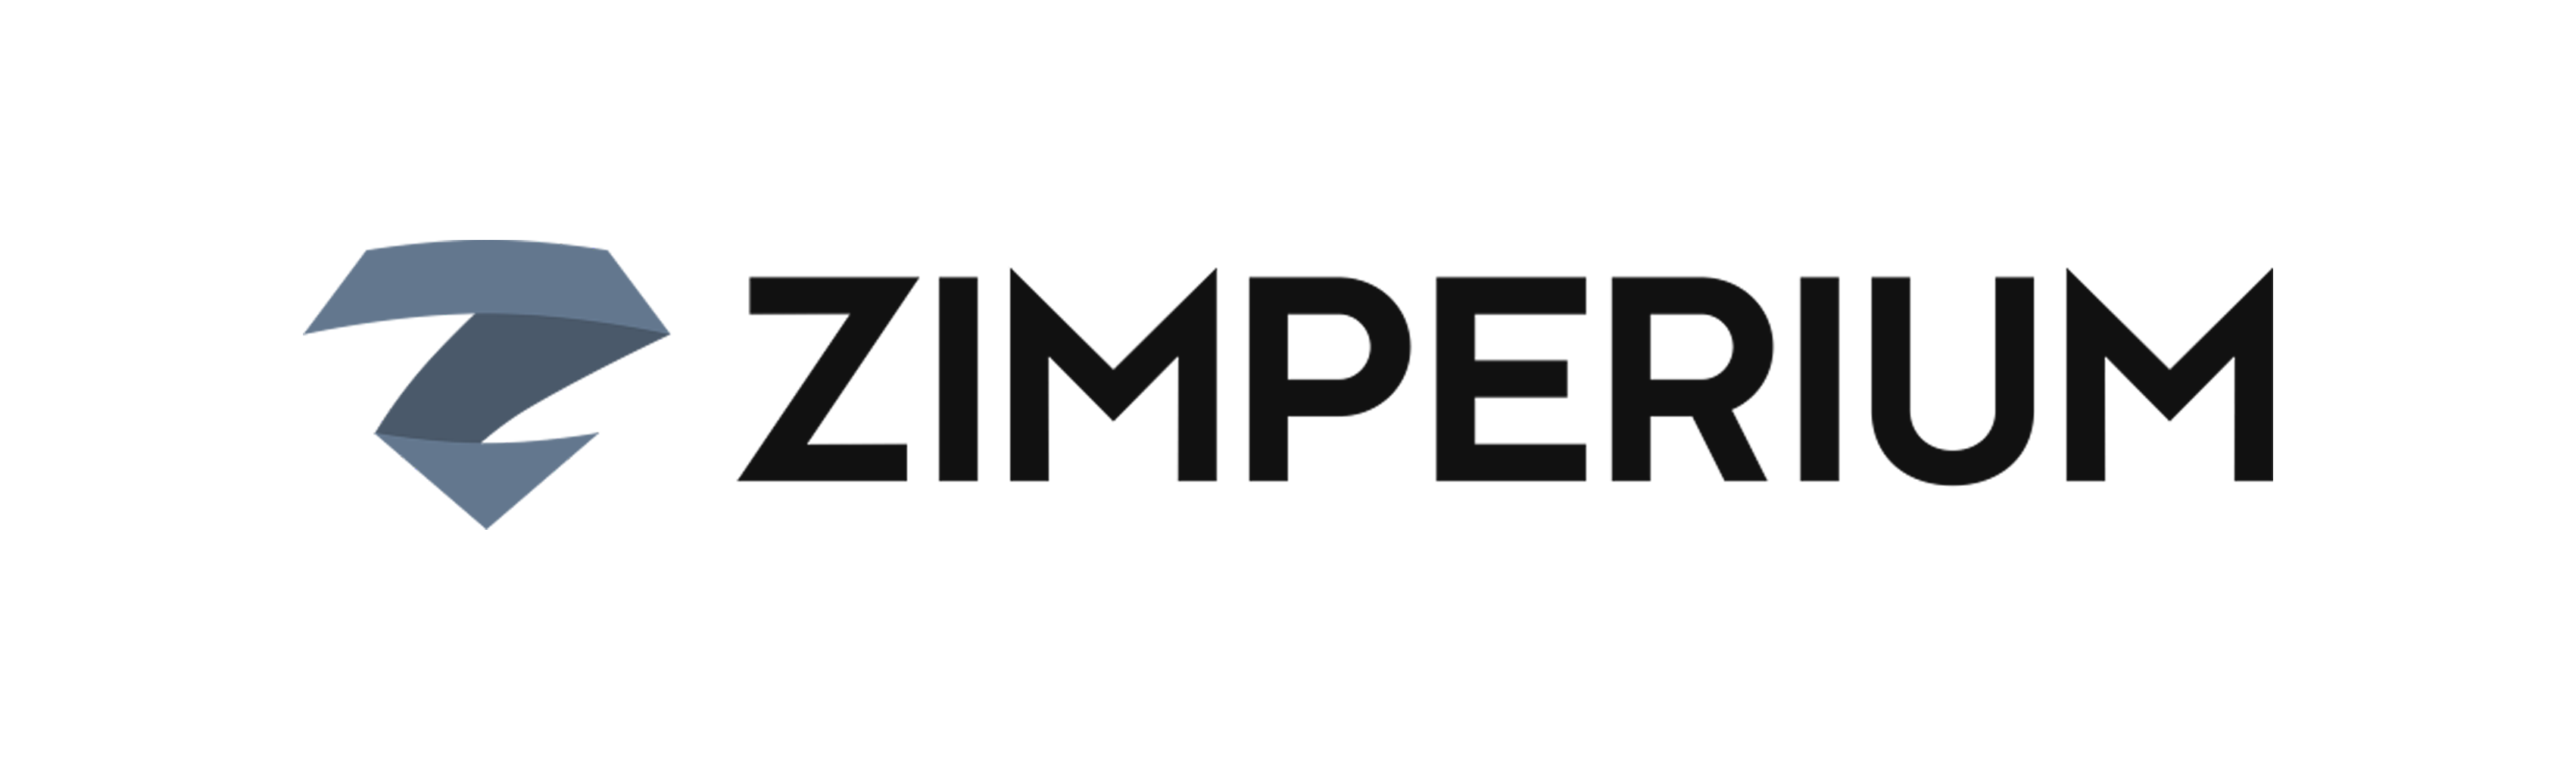 zimperium_logo_